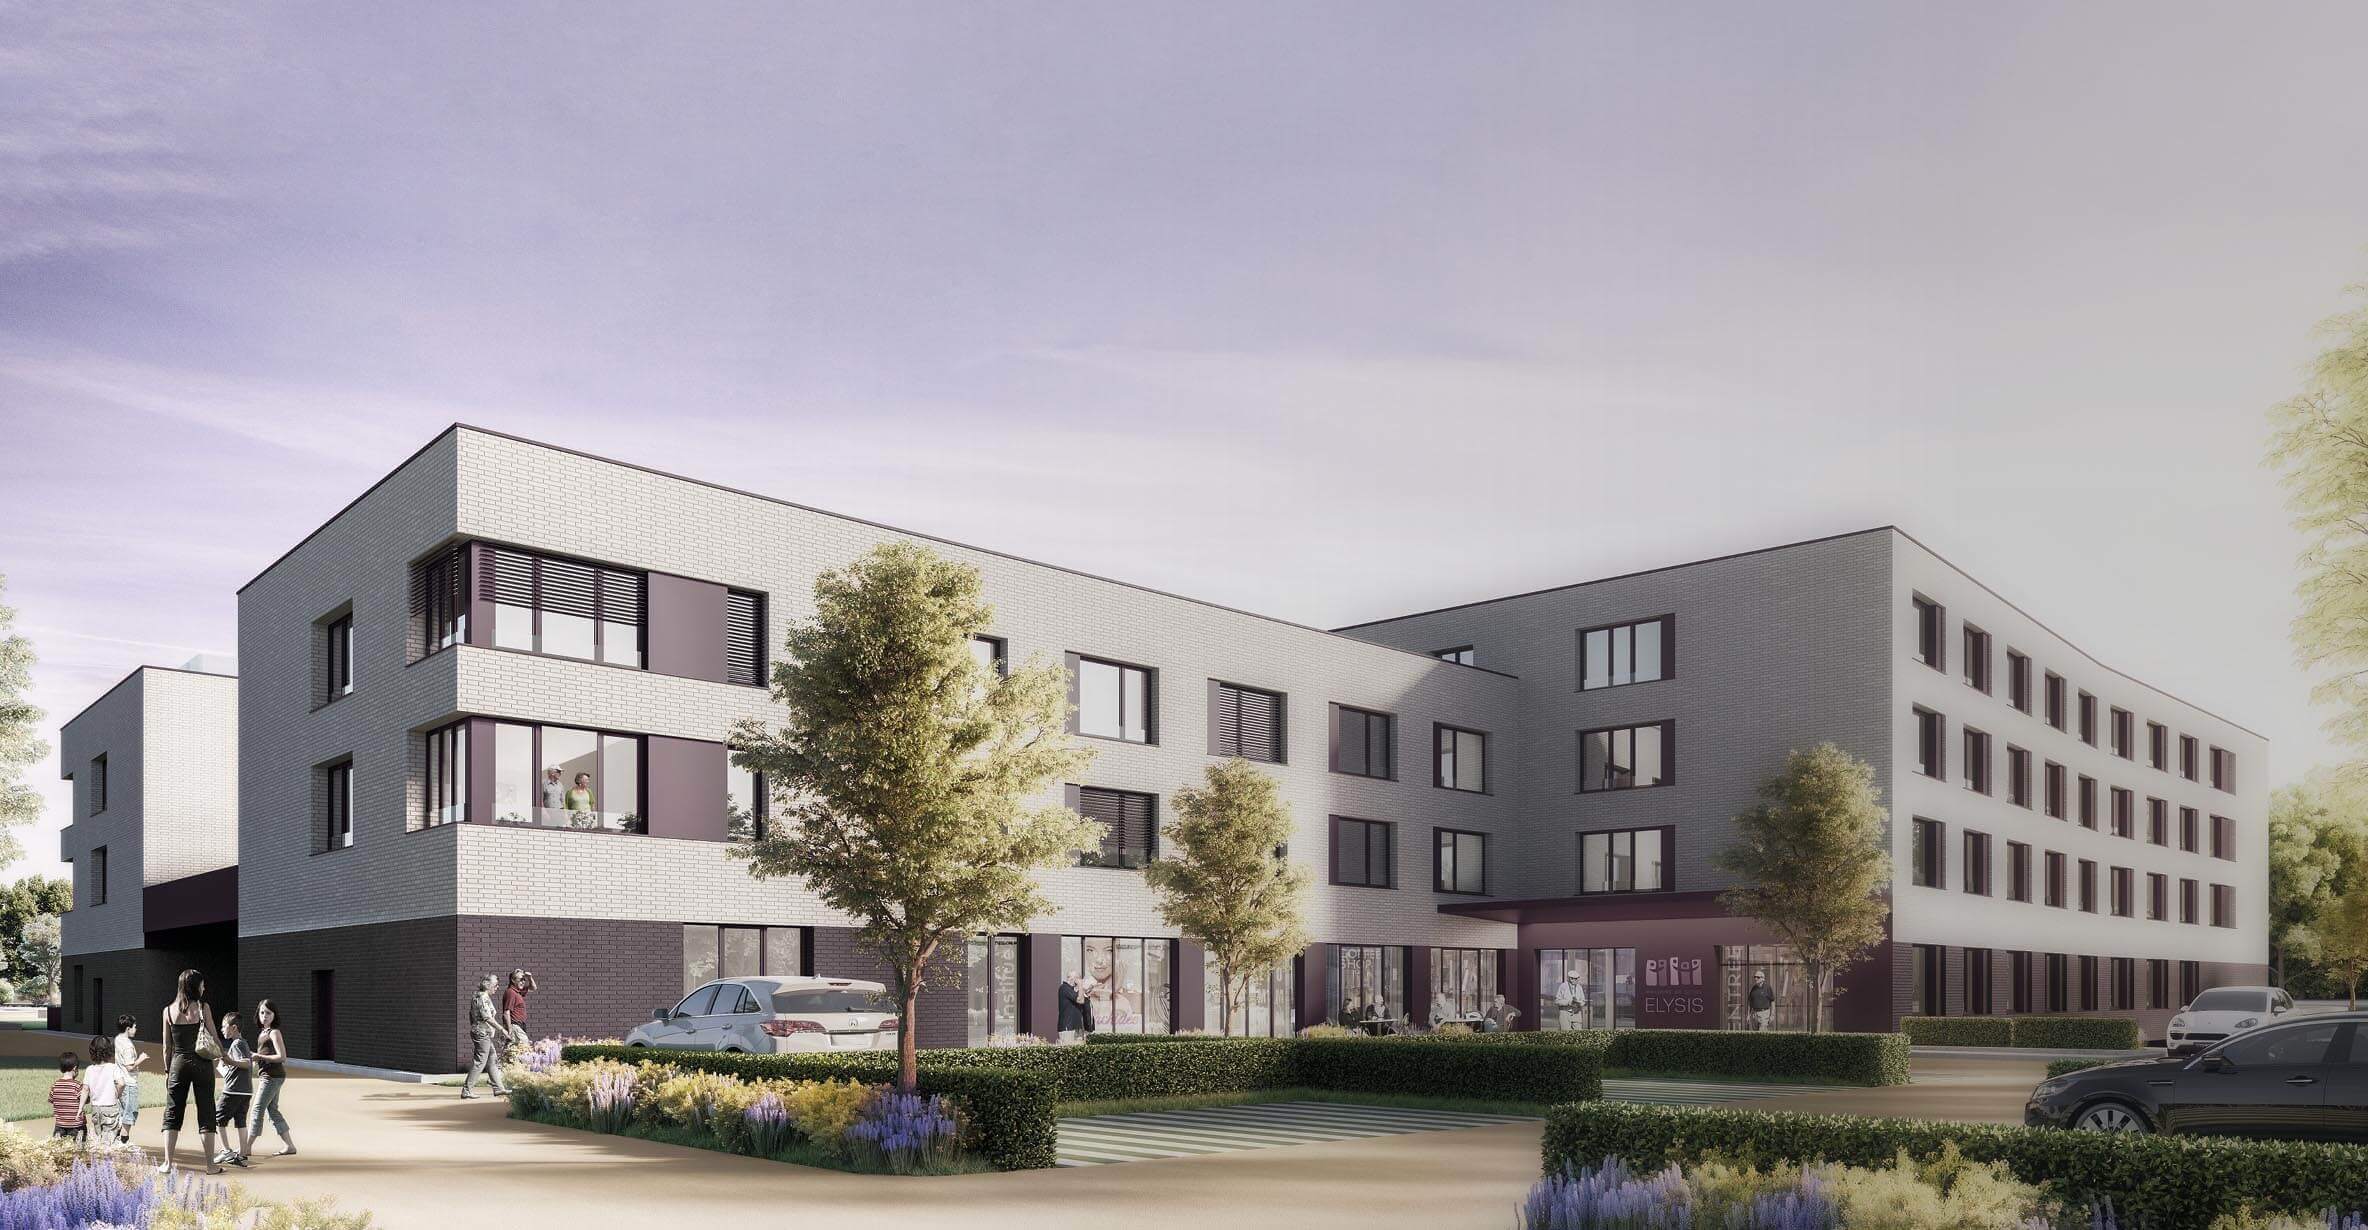 Découvrez notre nouvelle maison de soins à Esch-sur-Alzette (ouverture 2022)